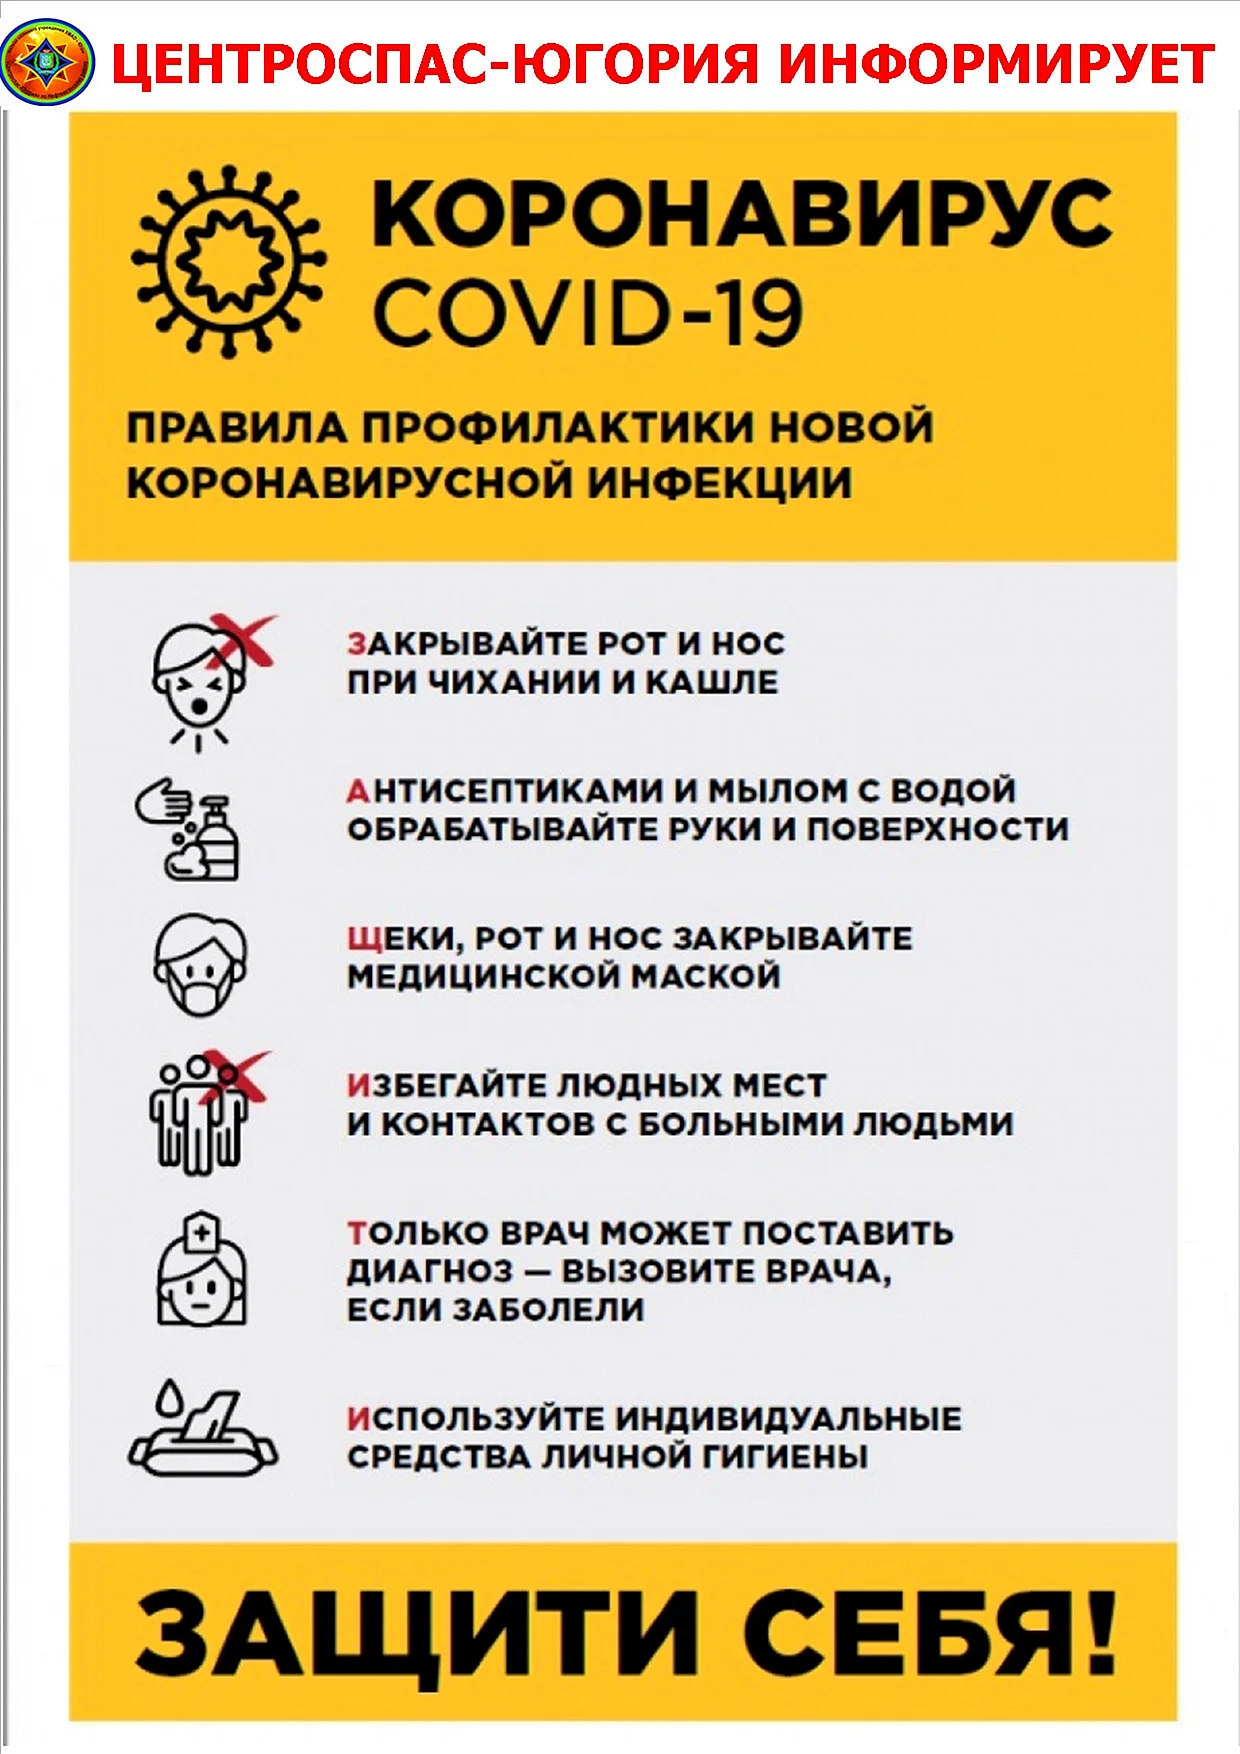 Правила профилактики новой коронавирусной инфекции